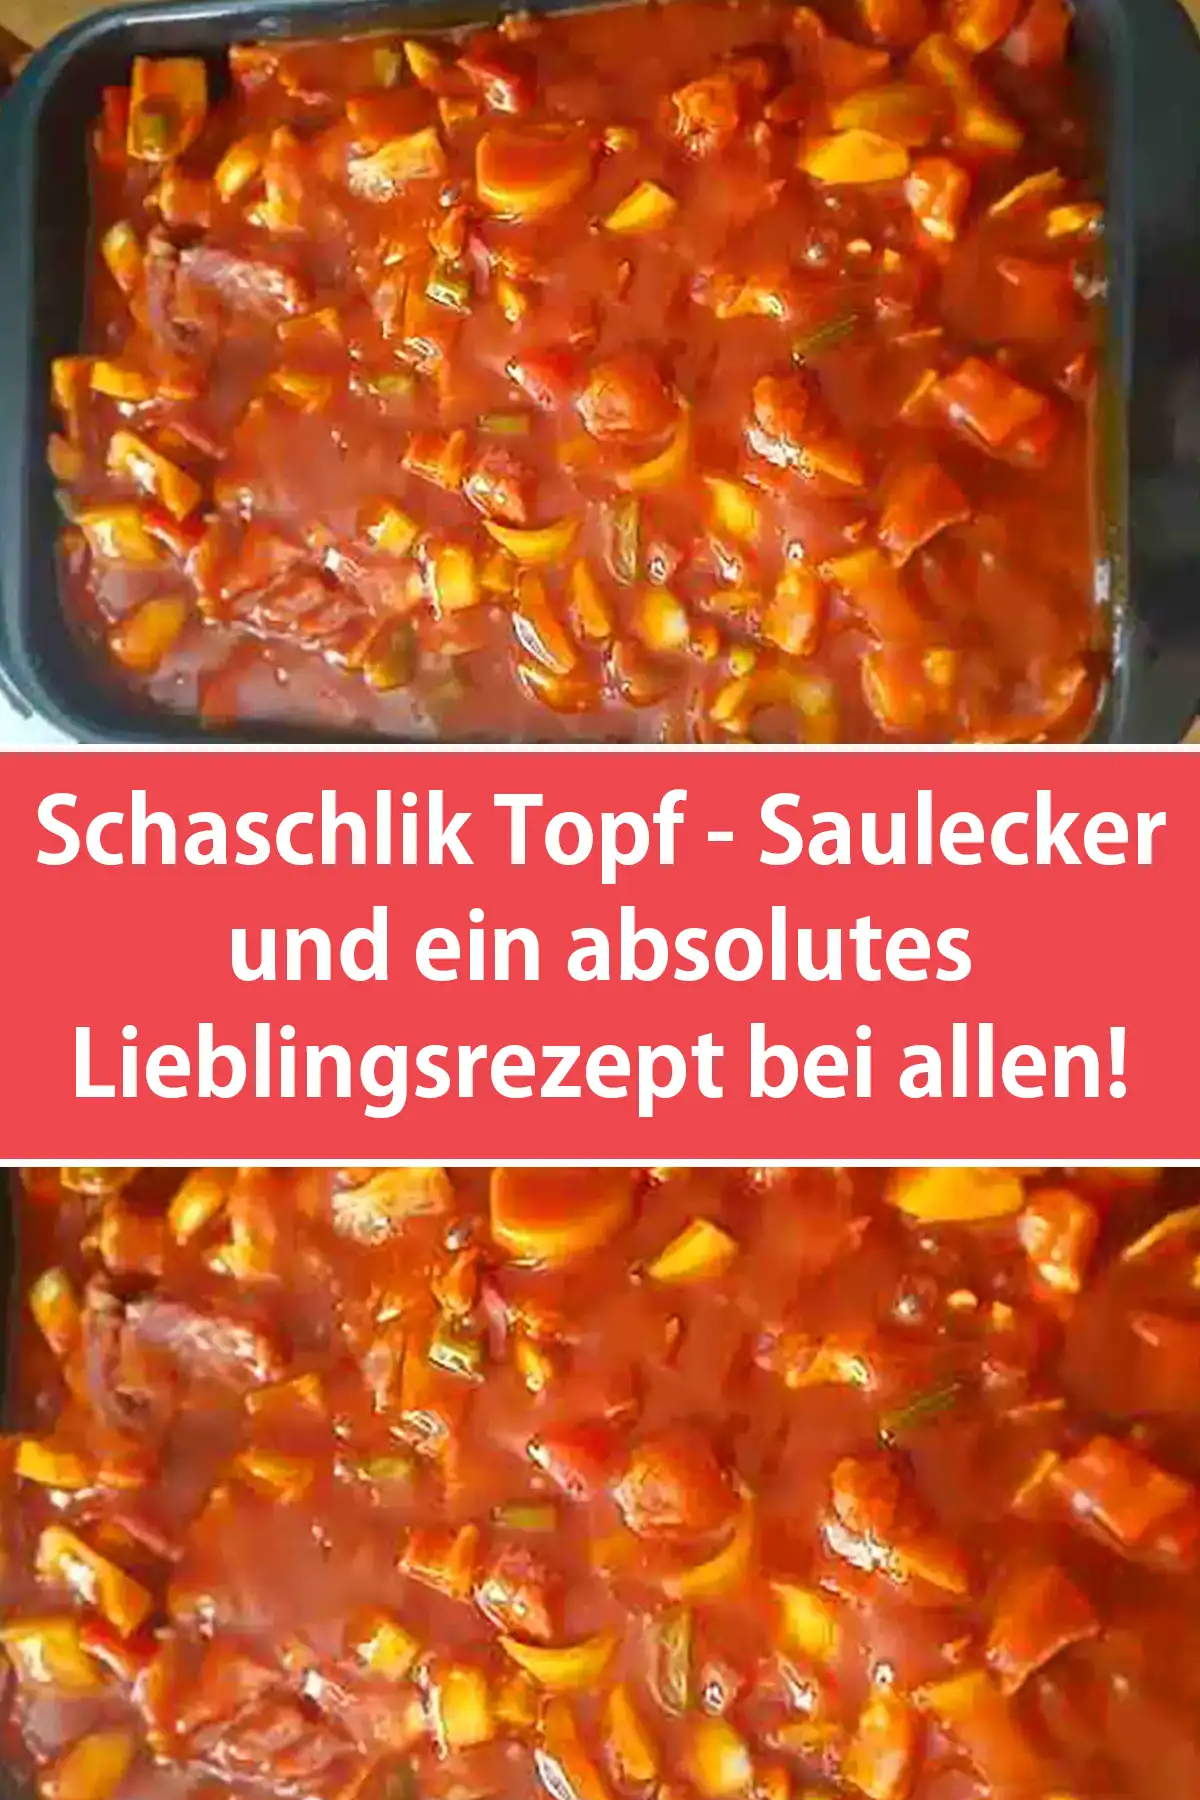 Schaschlik Topf - Saulecker und ein absolutes Lieblingsrezept bei allen!